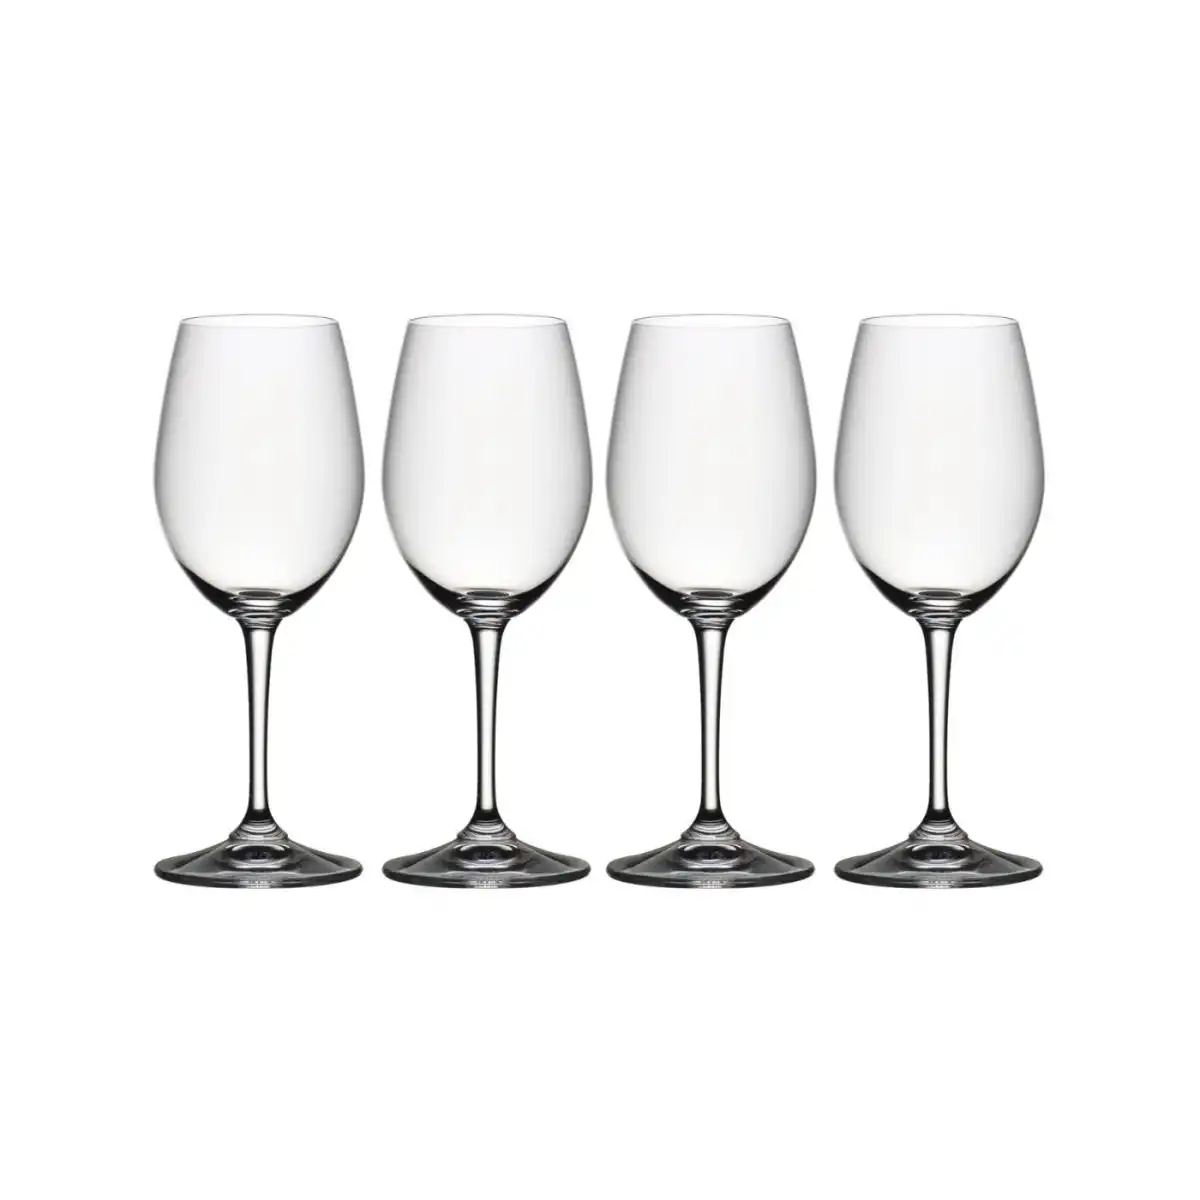 Riedel Degustazione White Wine Glass Set of 4